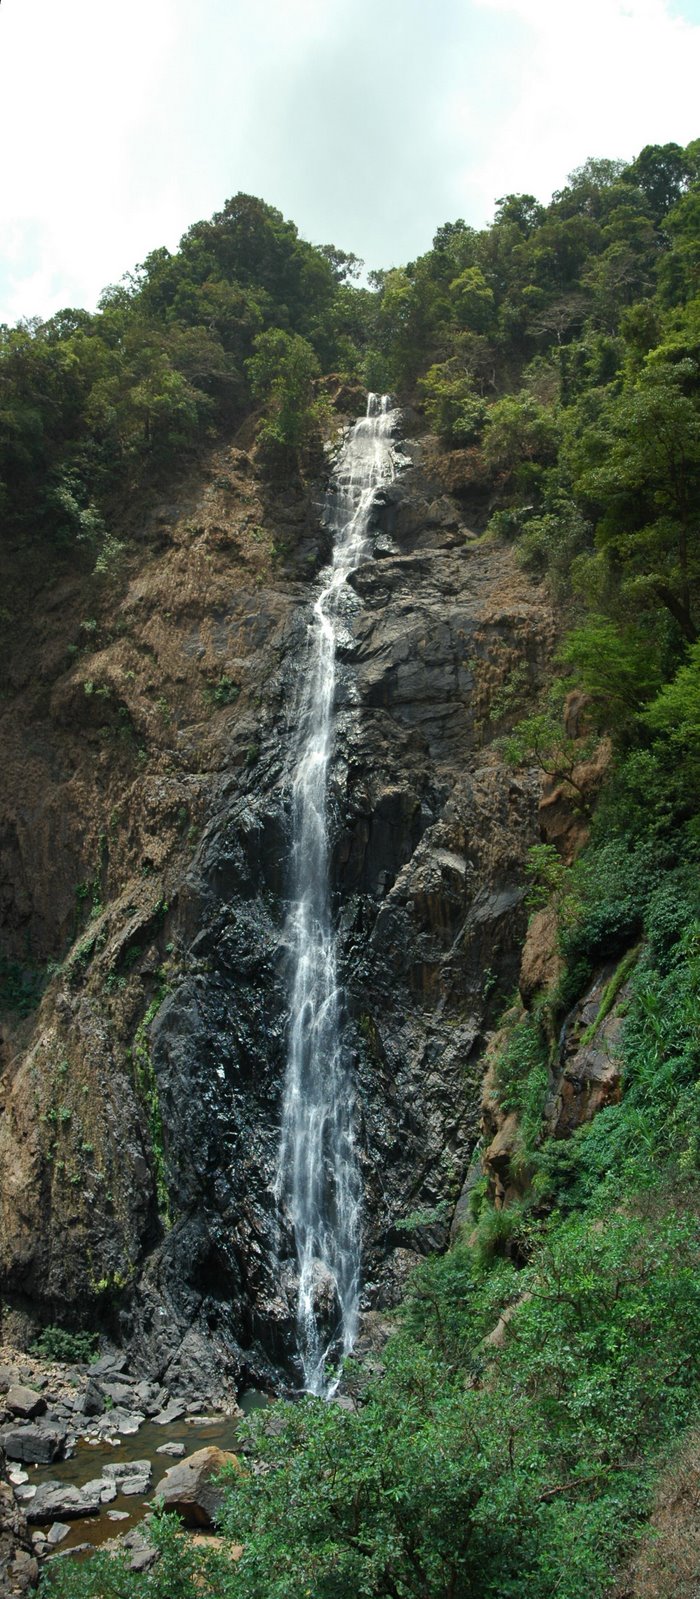 Dabbe falls